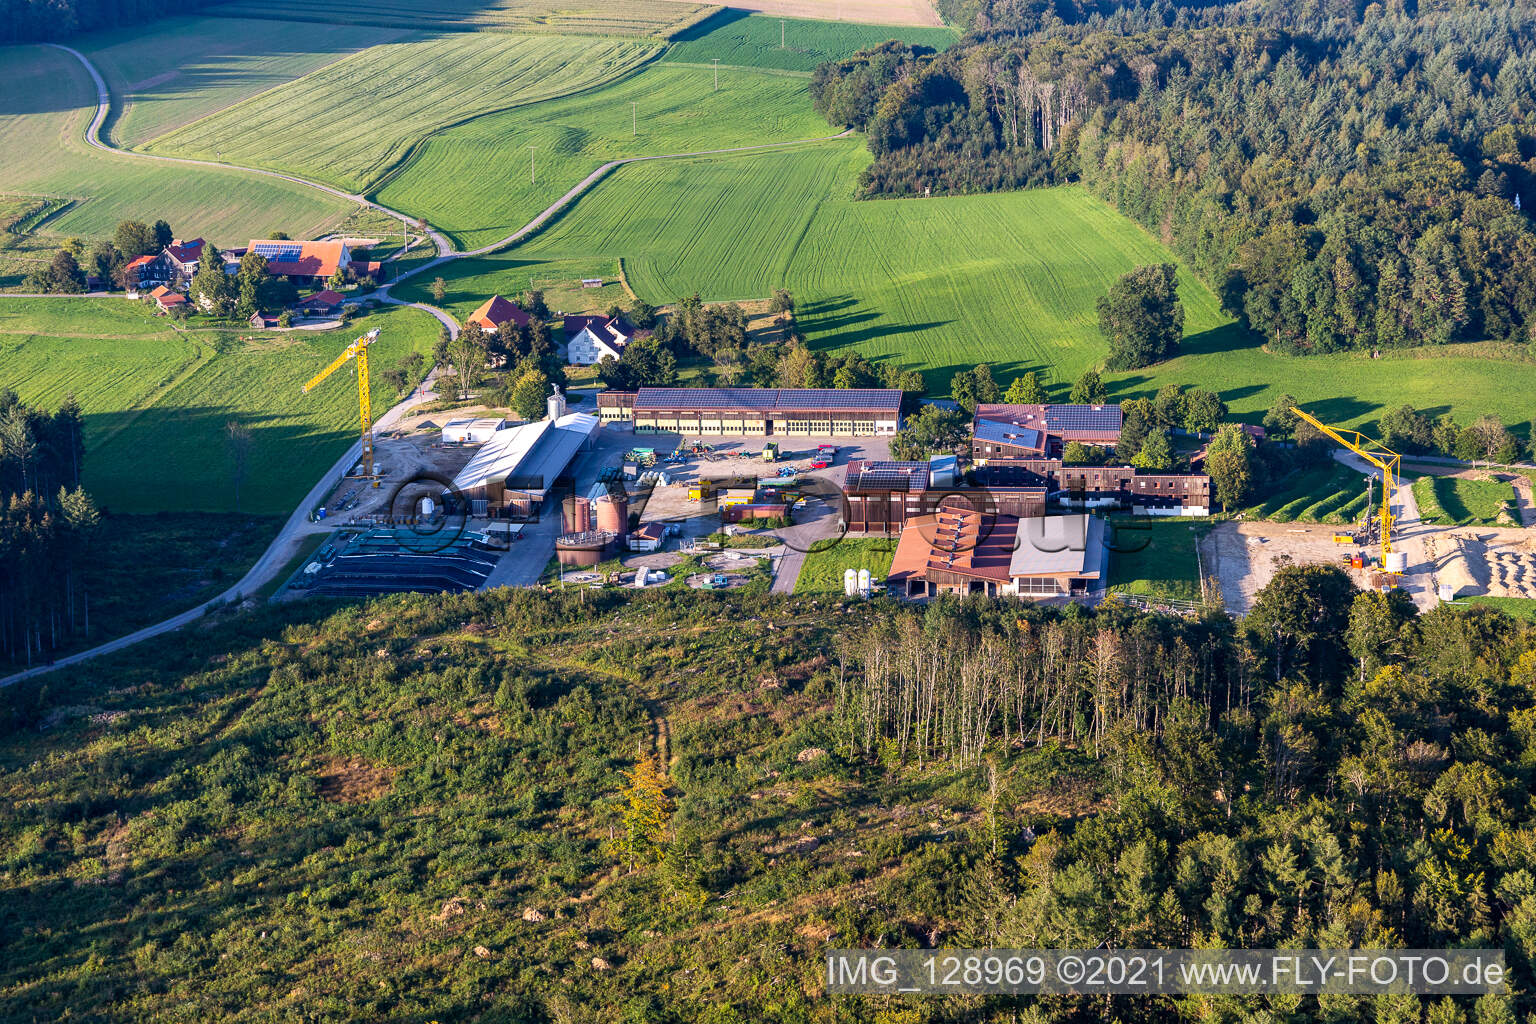 Vue aérienne de Centre agricole du Bade-Wurtemberg à le quartier Ebisweiler in Aulendorf dans le département Bade-Wurtemberg, Allemagne